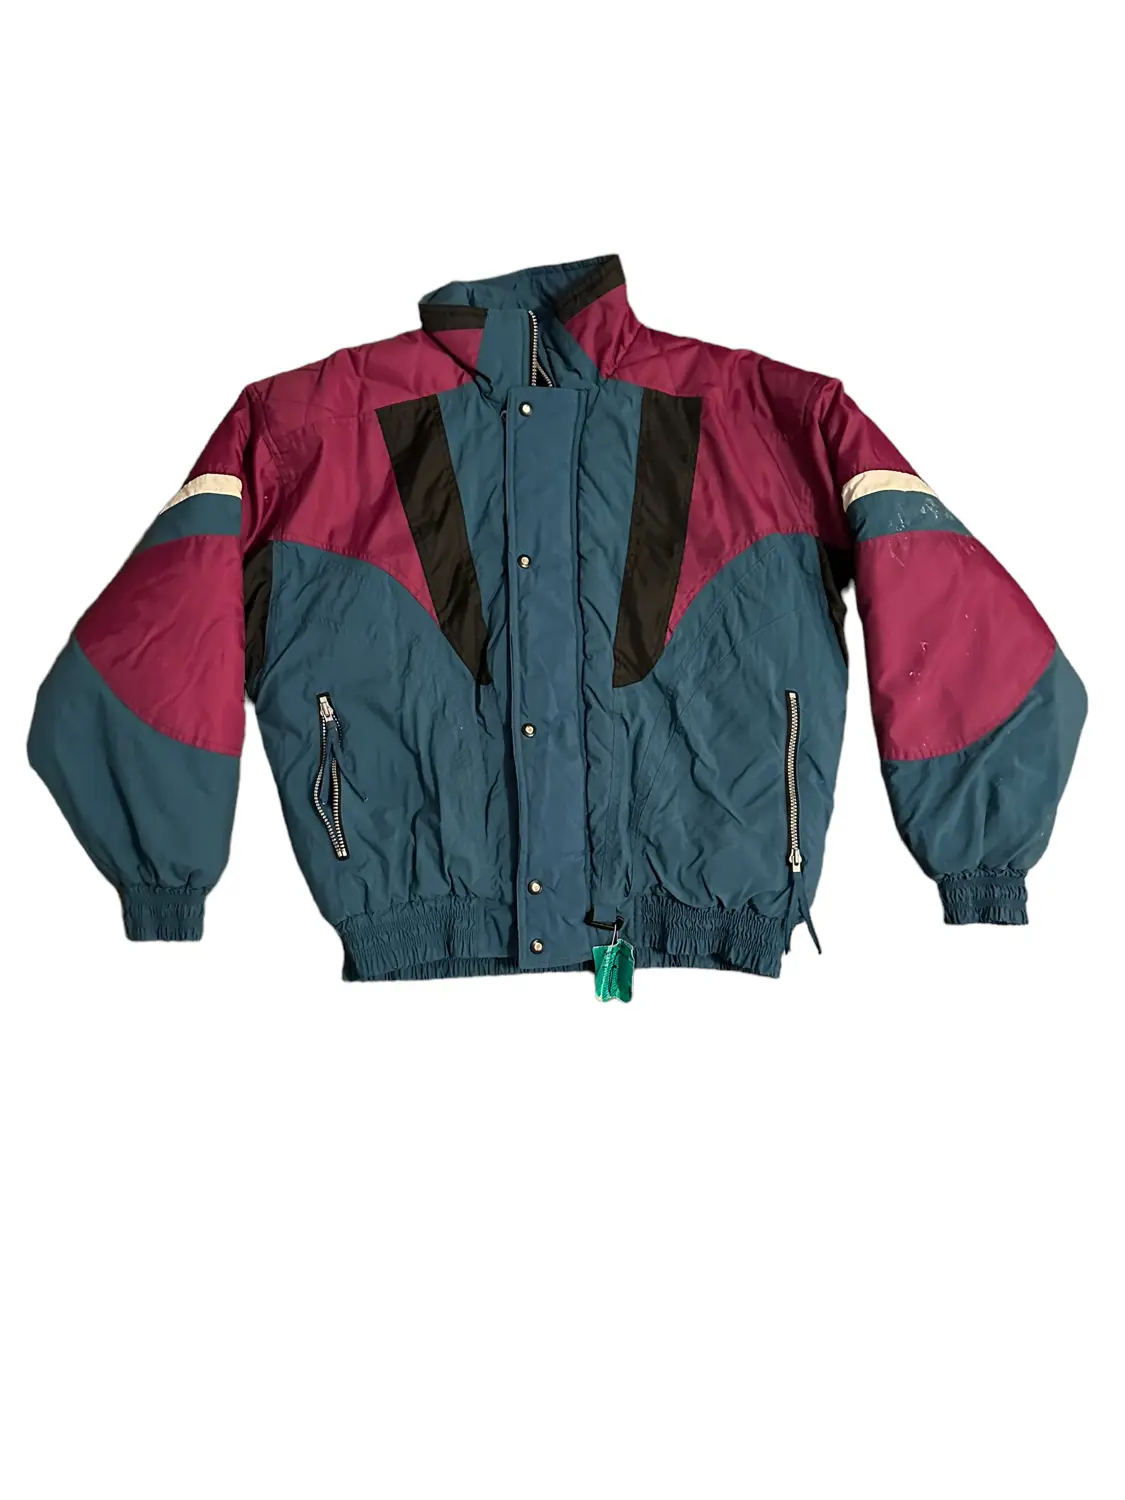 90s Alpine Ski jacket